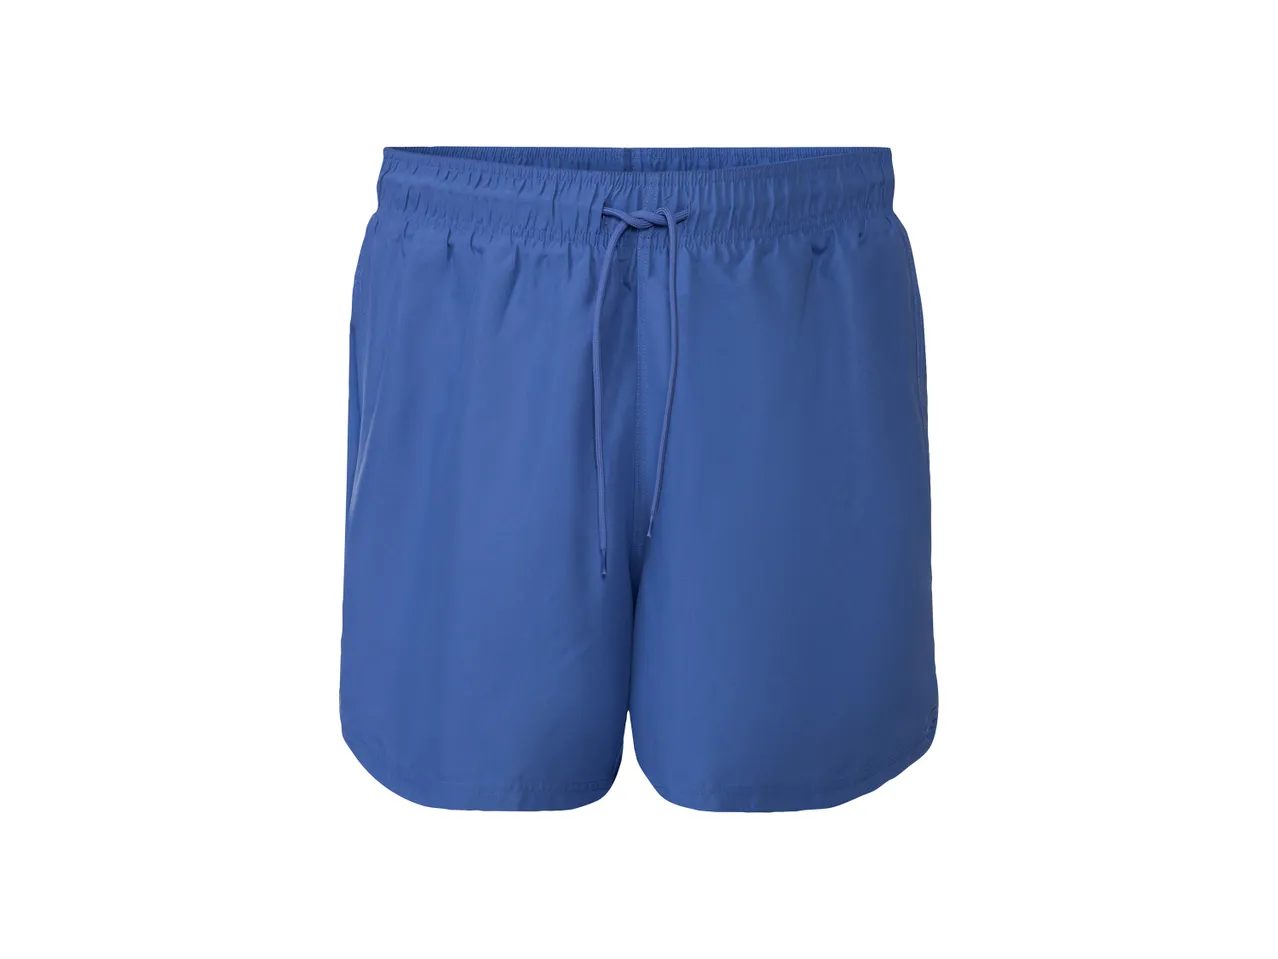 Shorts mare da uomo , prezzo 5.99 EUR